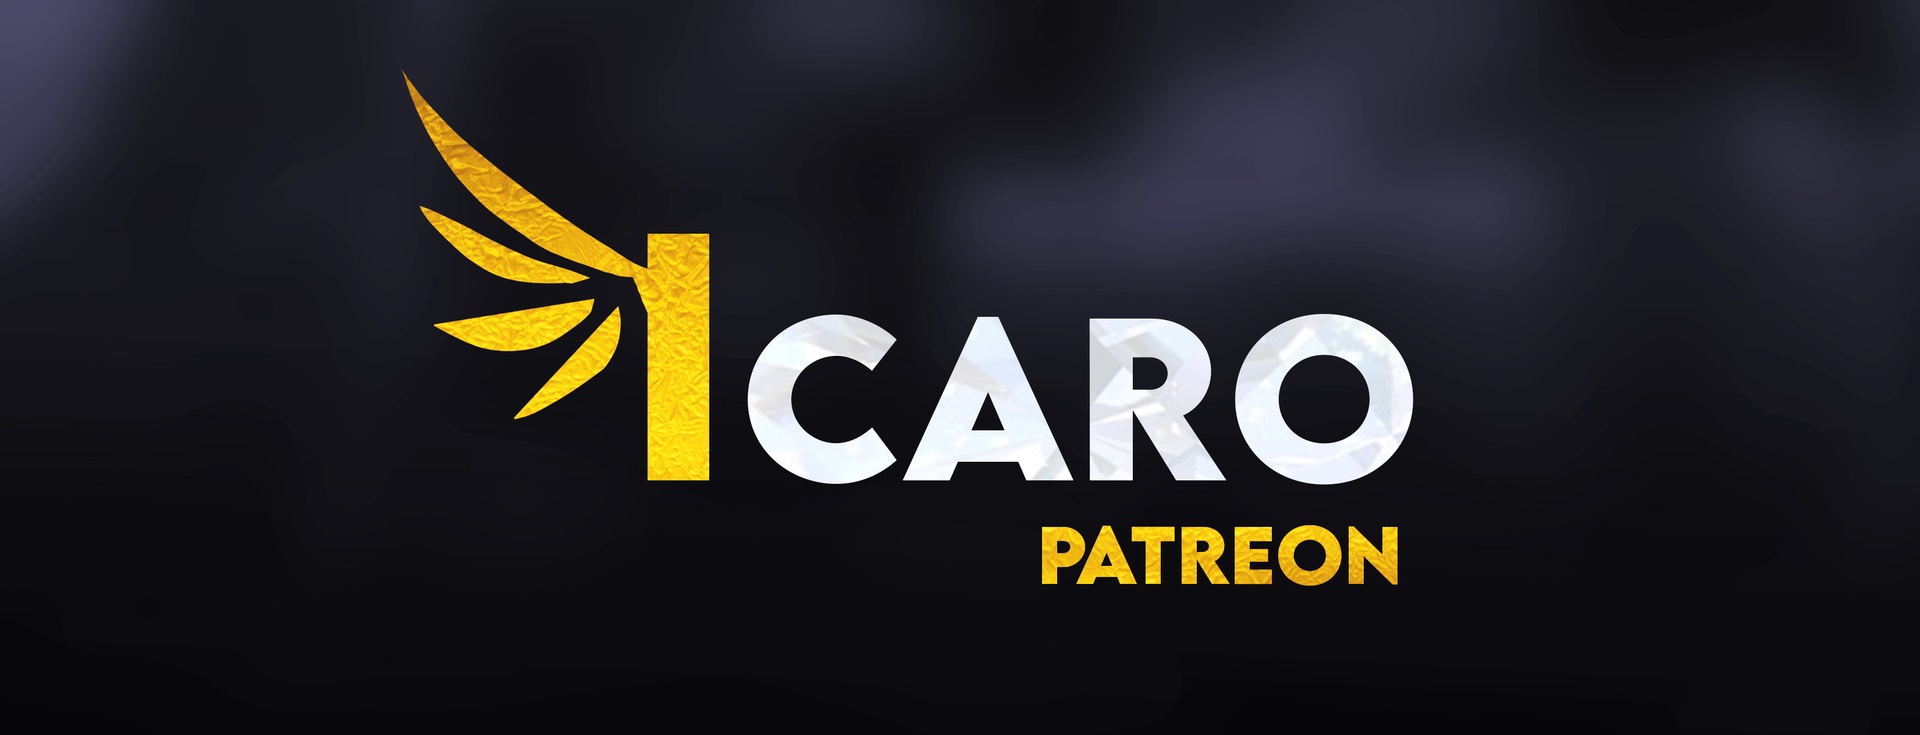 Icaro_Patreon_Banner.jpg